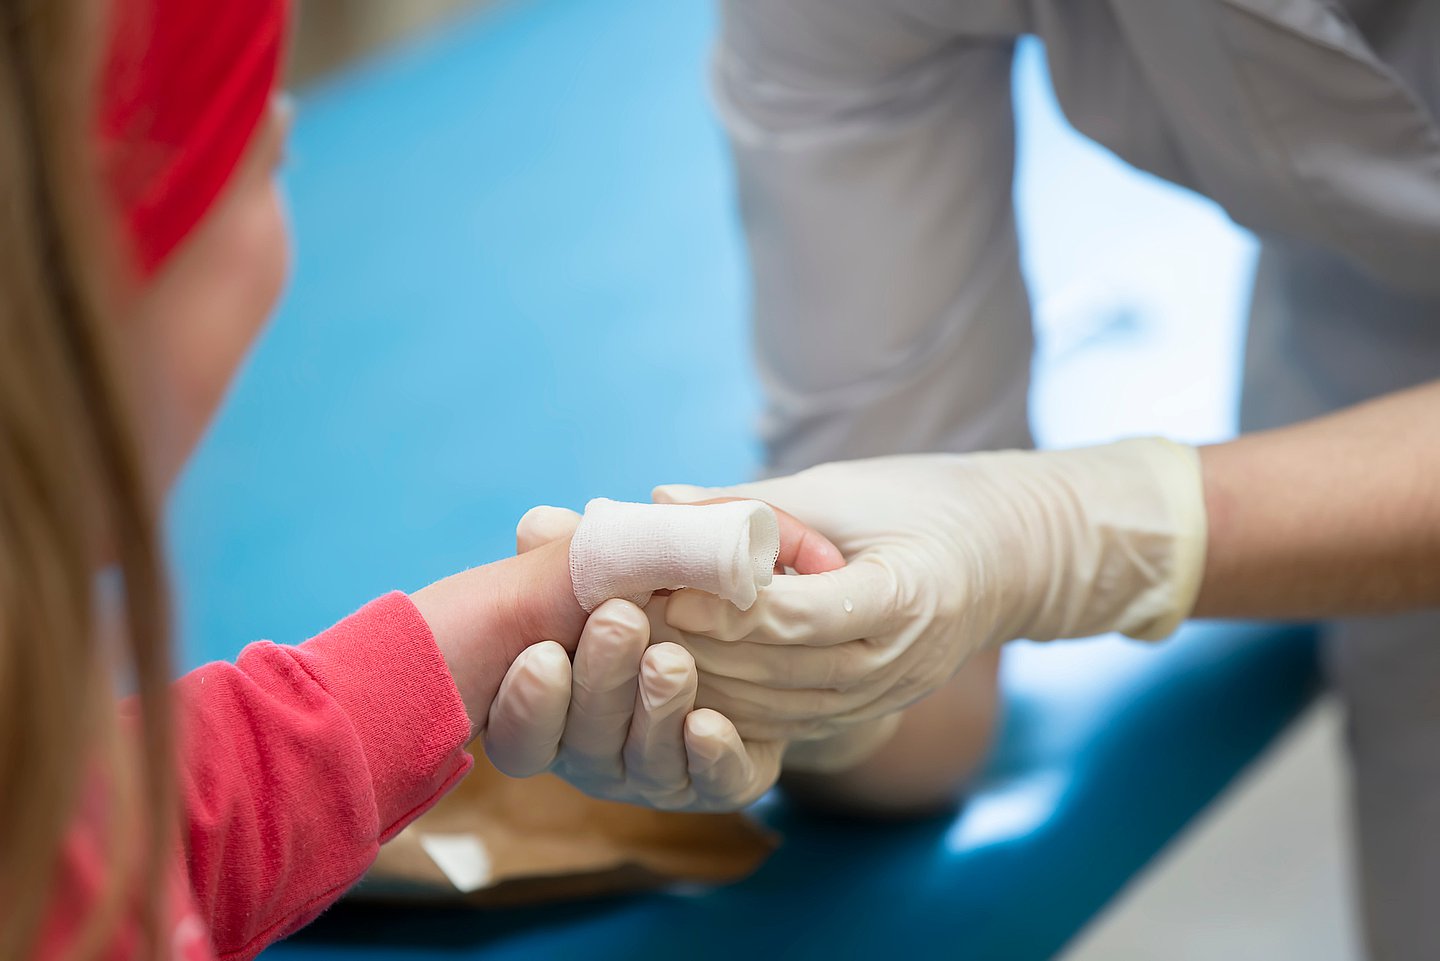 Das Foto zeigt ein Kind mit Verbrennungen an der linken Hand, das von medizinischem Personal behandelt wird.